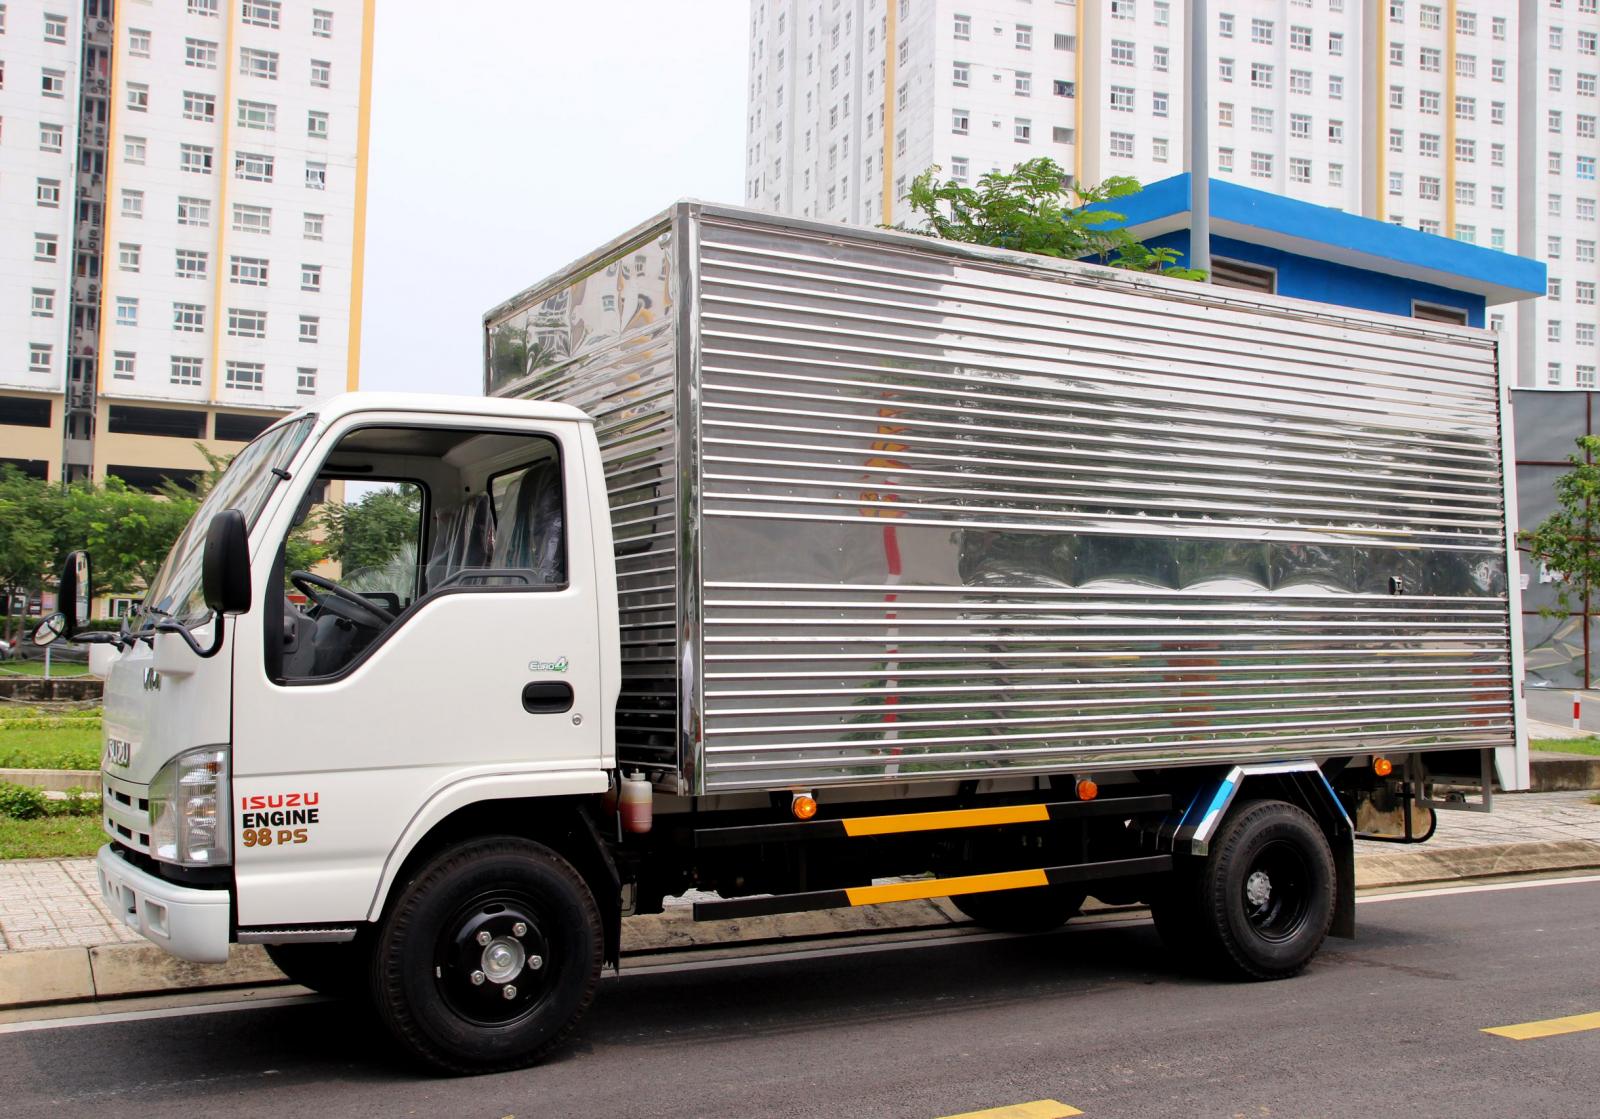 Xe tải 500kg - dưới 1 tấn 2019 - Thanh lý xe tải Isuzu Vĩnh Phát 1 tấn 9 thùng kín, giảm giá cực sốc, giá rẻ bất ngờ